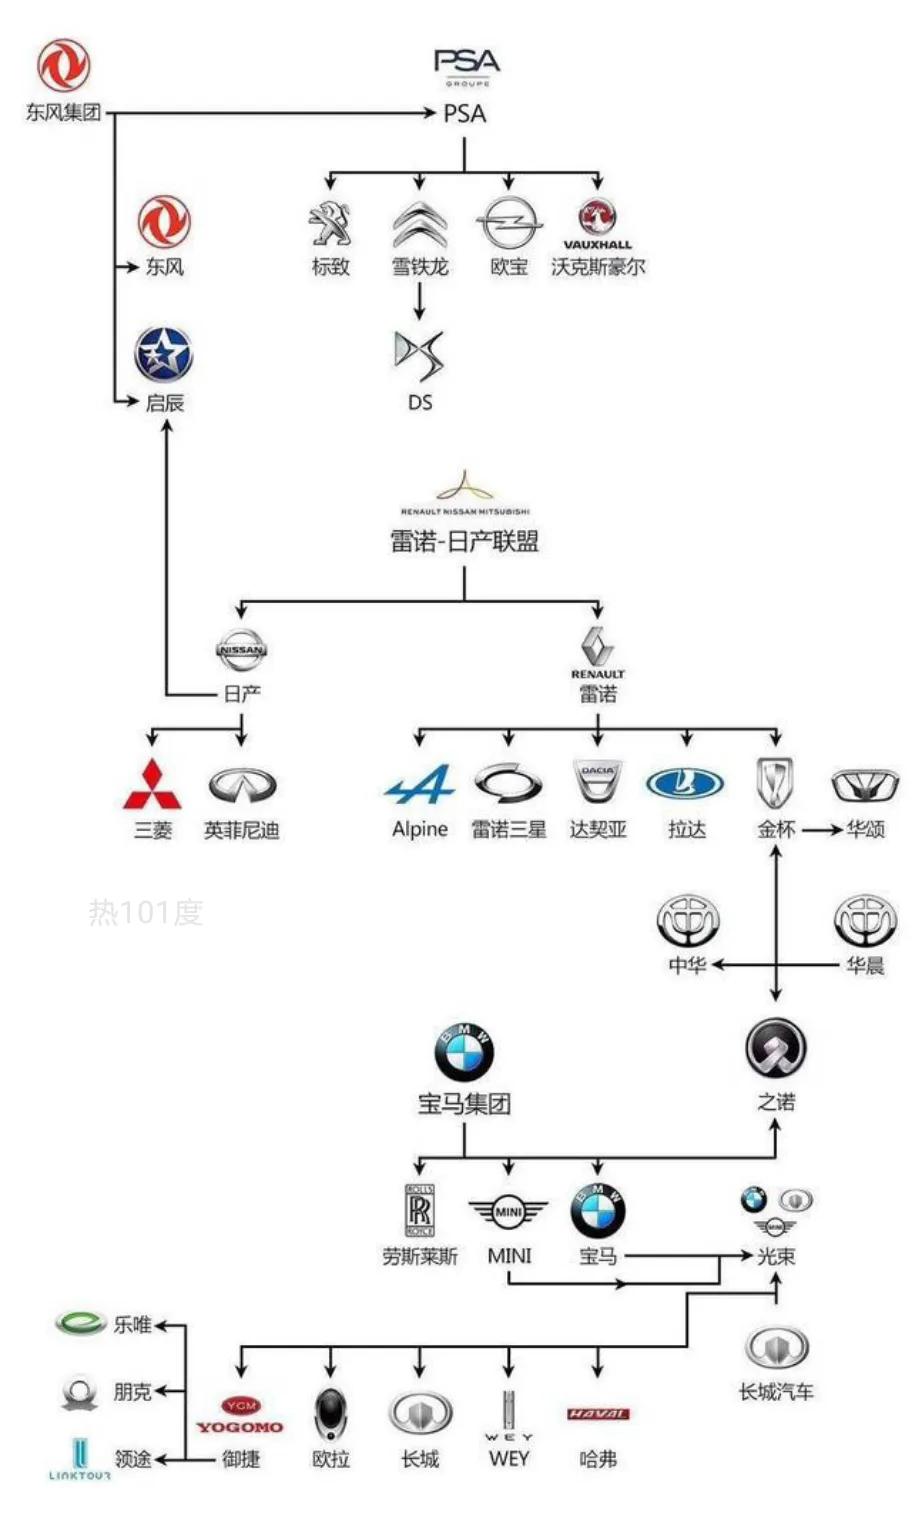 汽车品牌框架图仅供参考